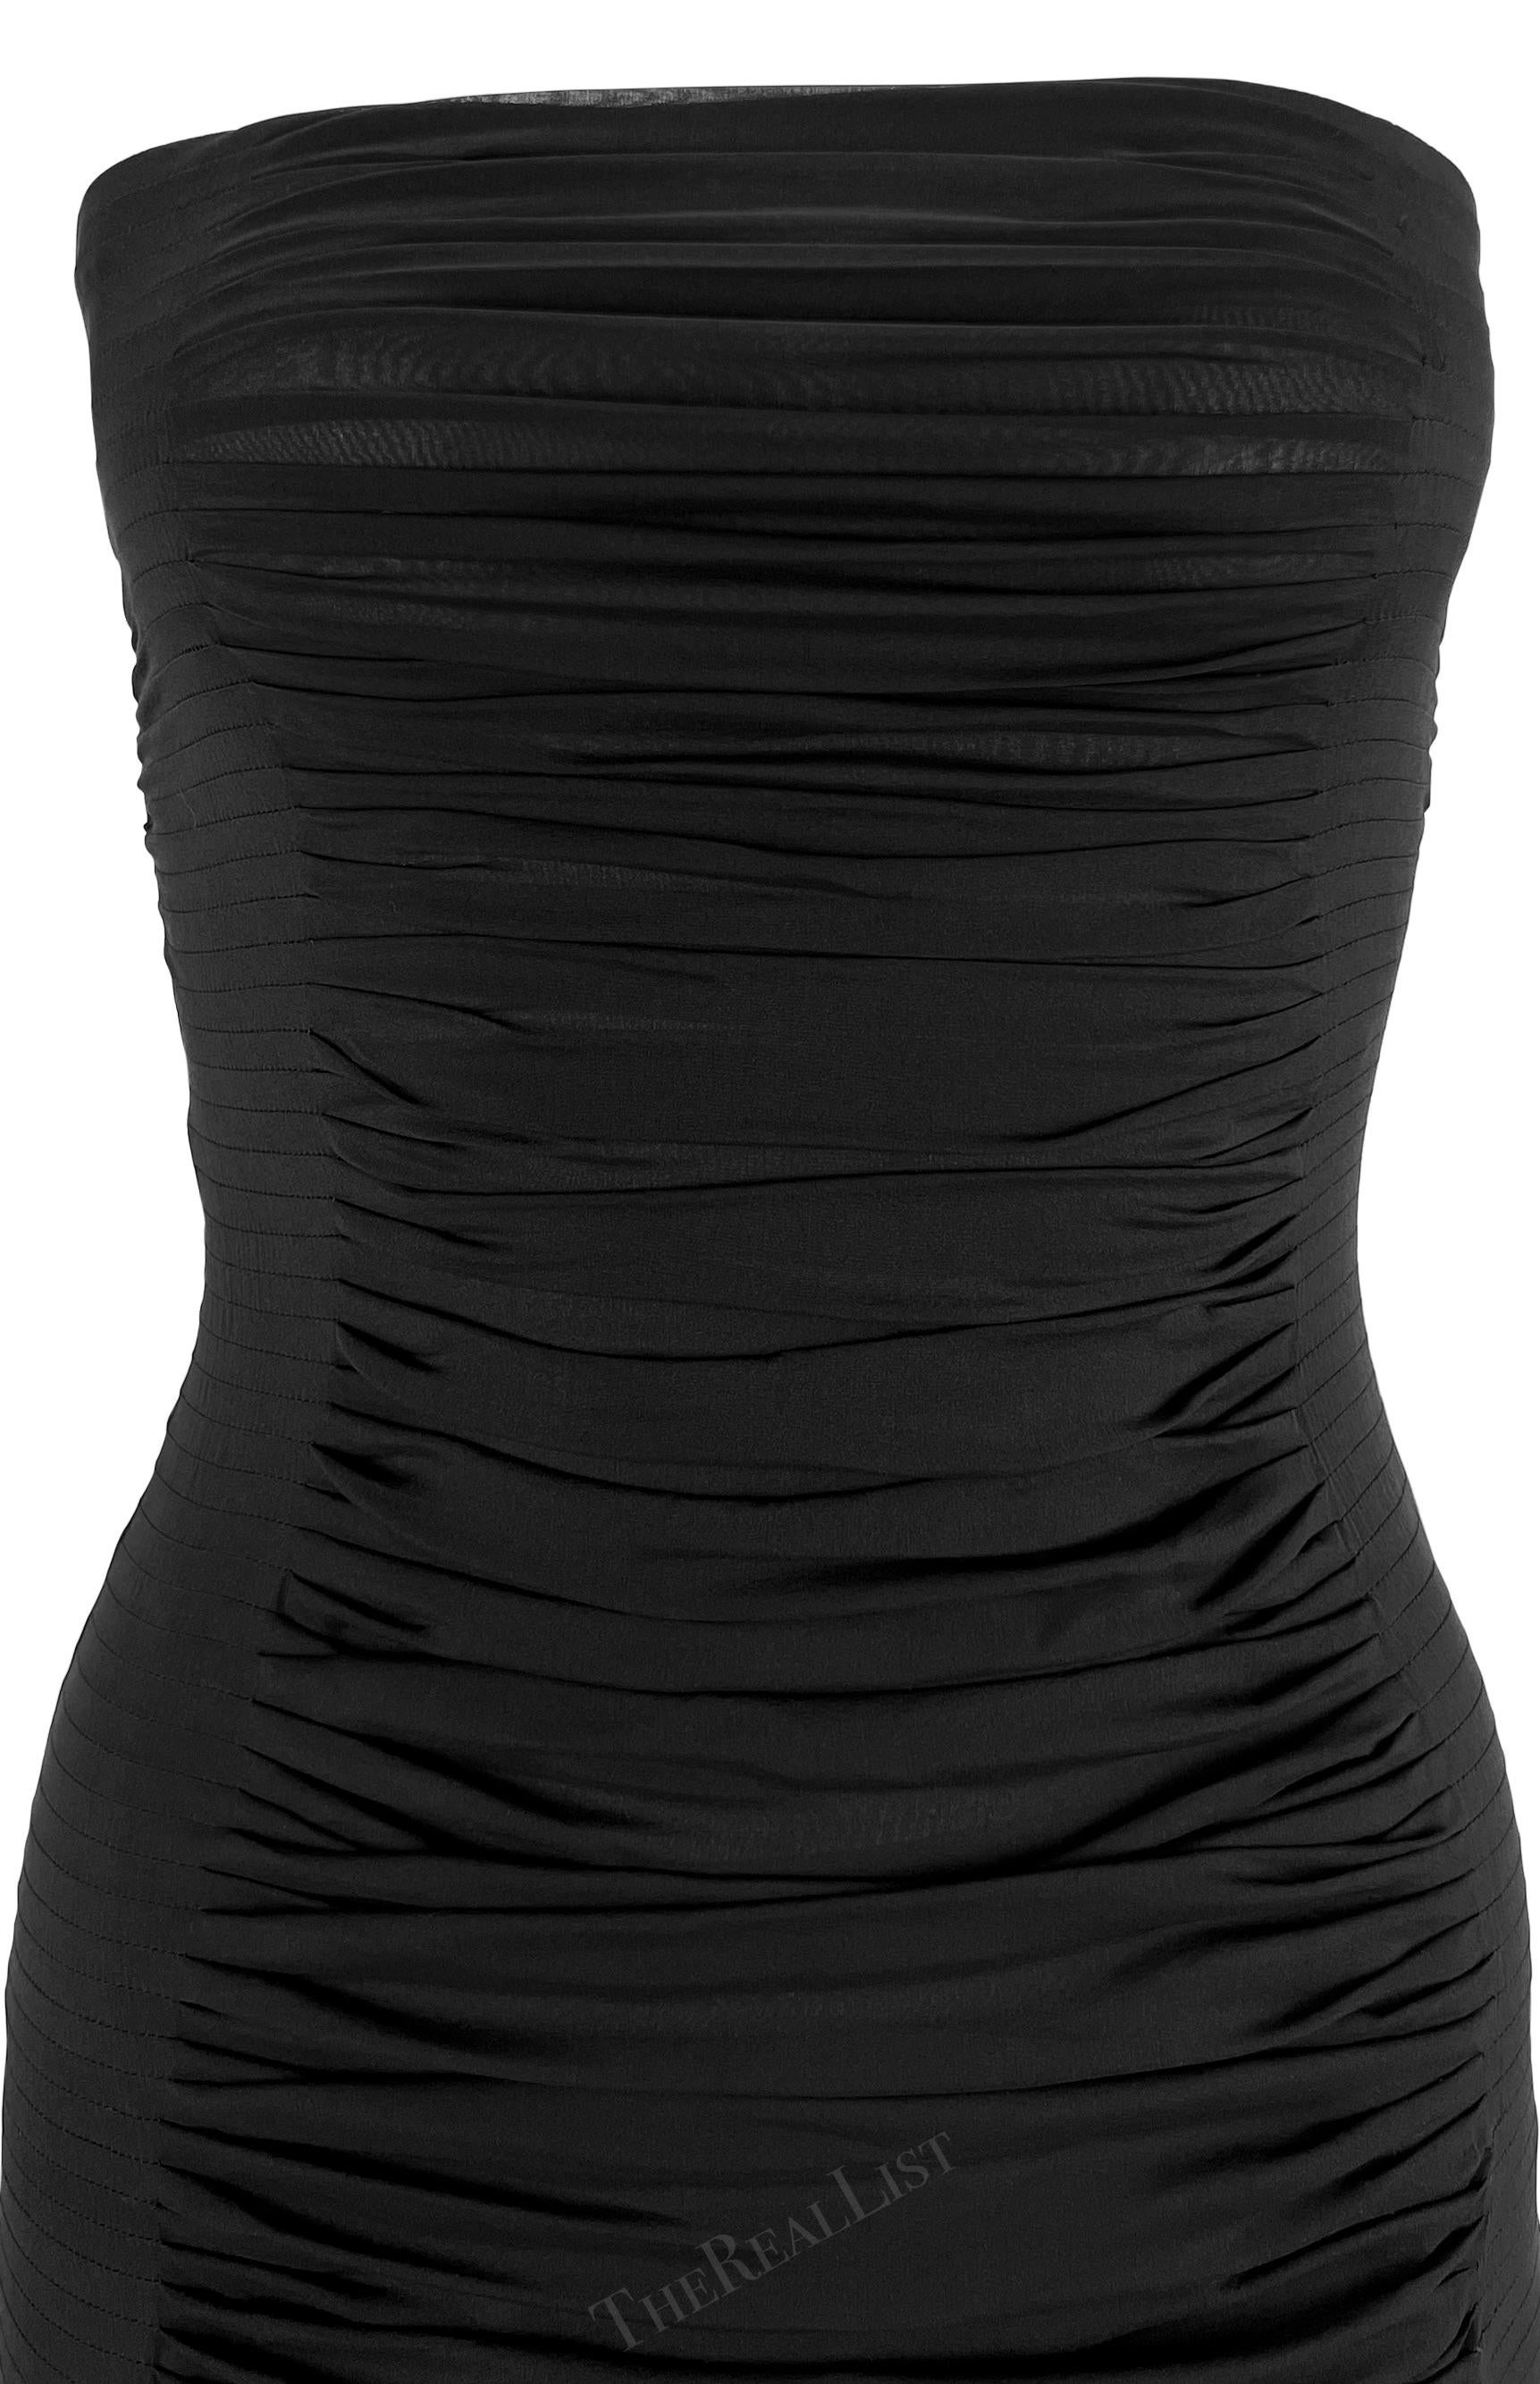 Présentation d'une fabuleuse mini robe bustier noire Yves Saint Laurent Rive Gauche, dessinée par Tom Ford. Issue de la collection printemps/été 2001, cette robe bustier chic est confectionnée en mousseline de soie légère et présente des ruchés et